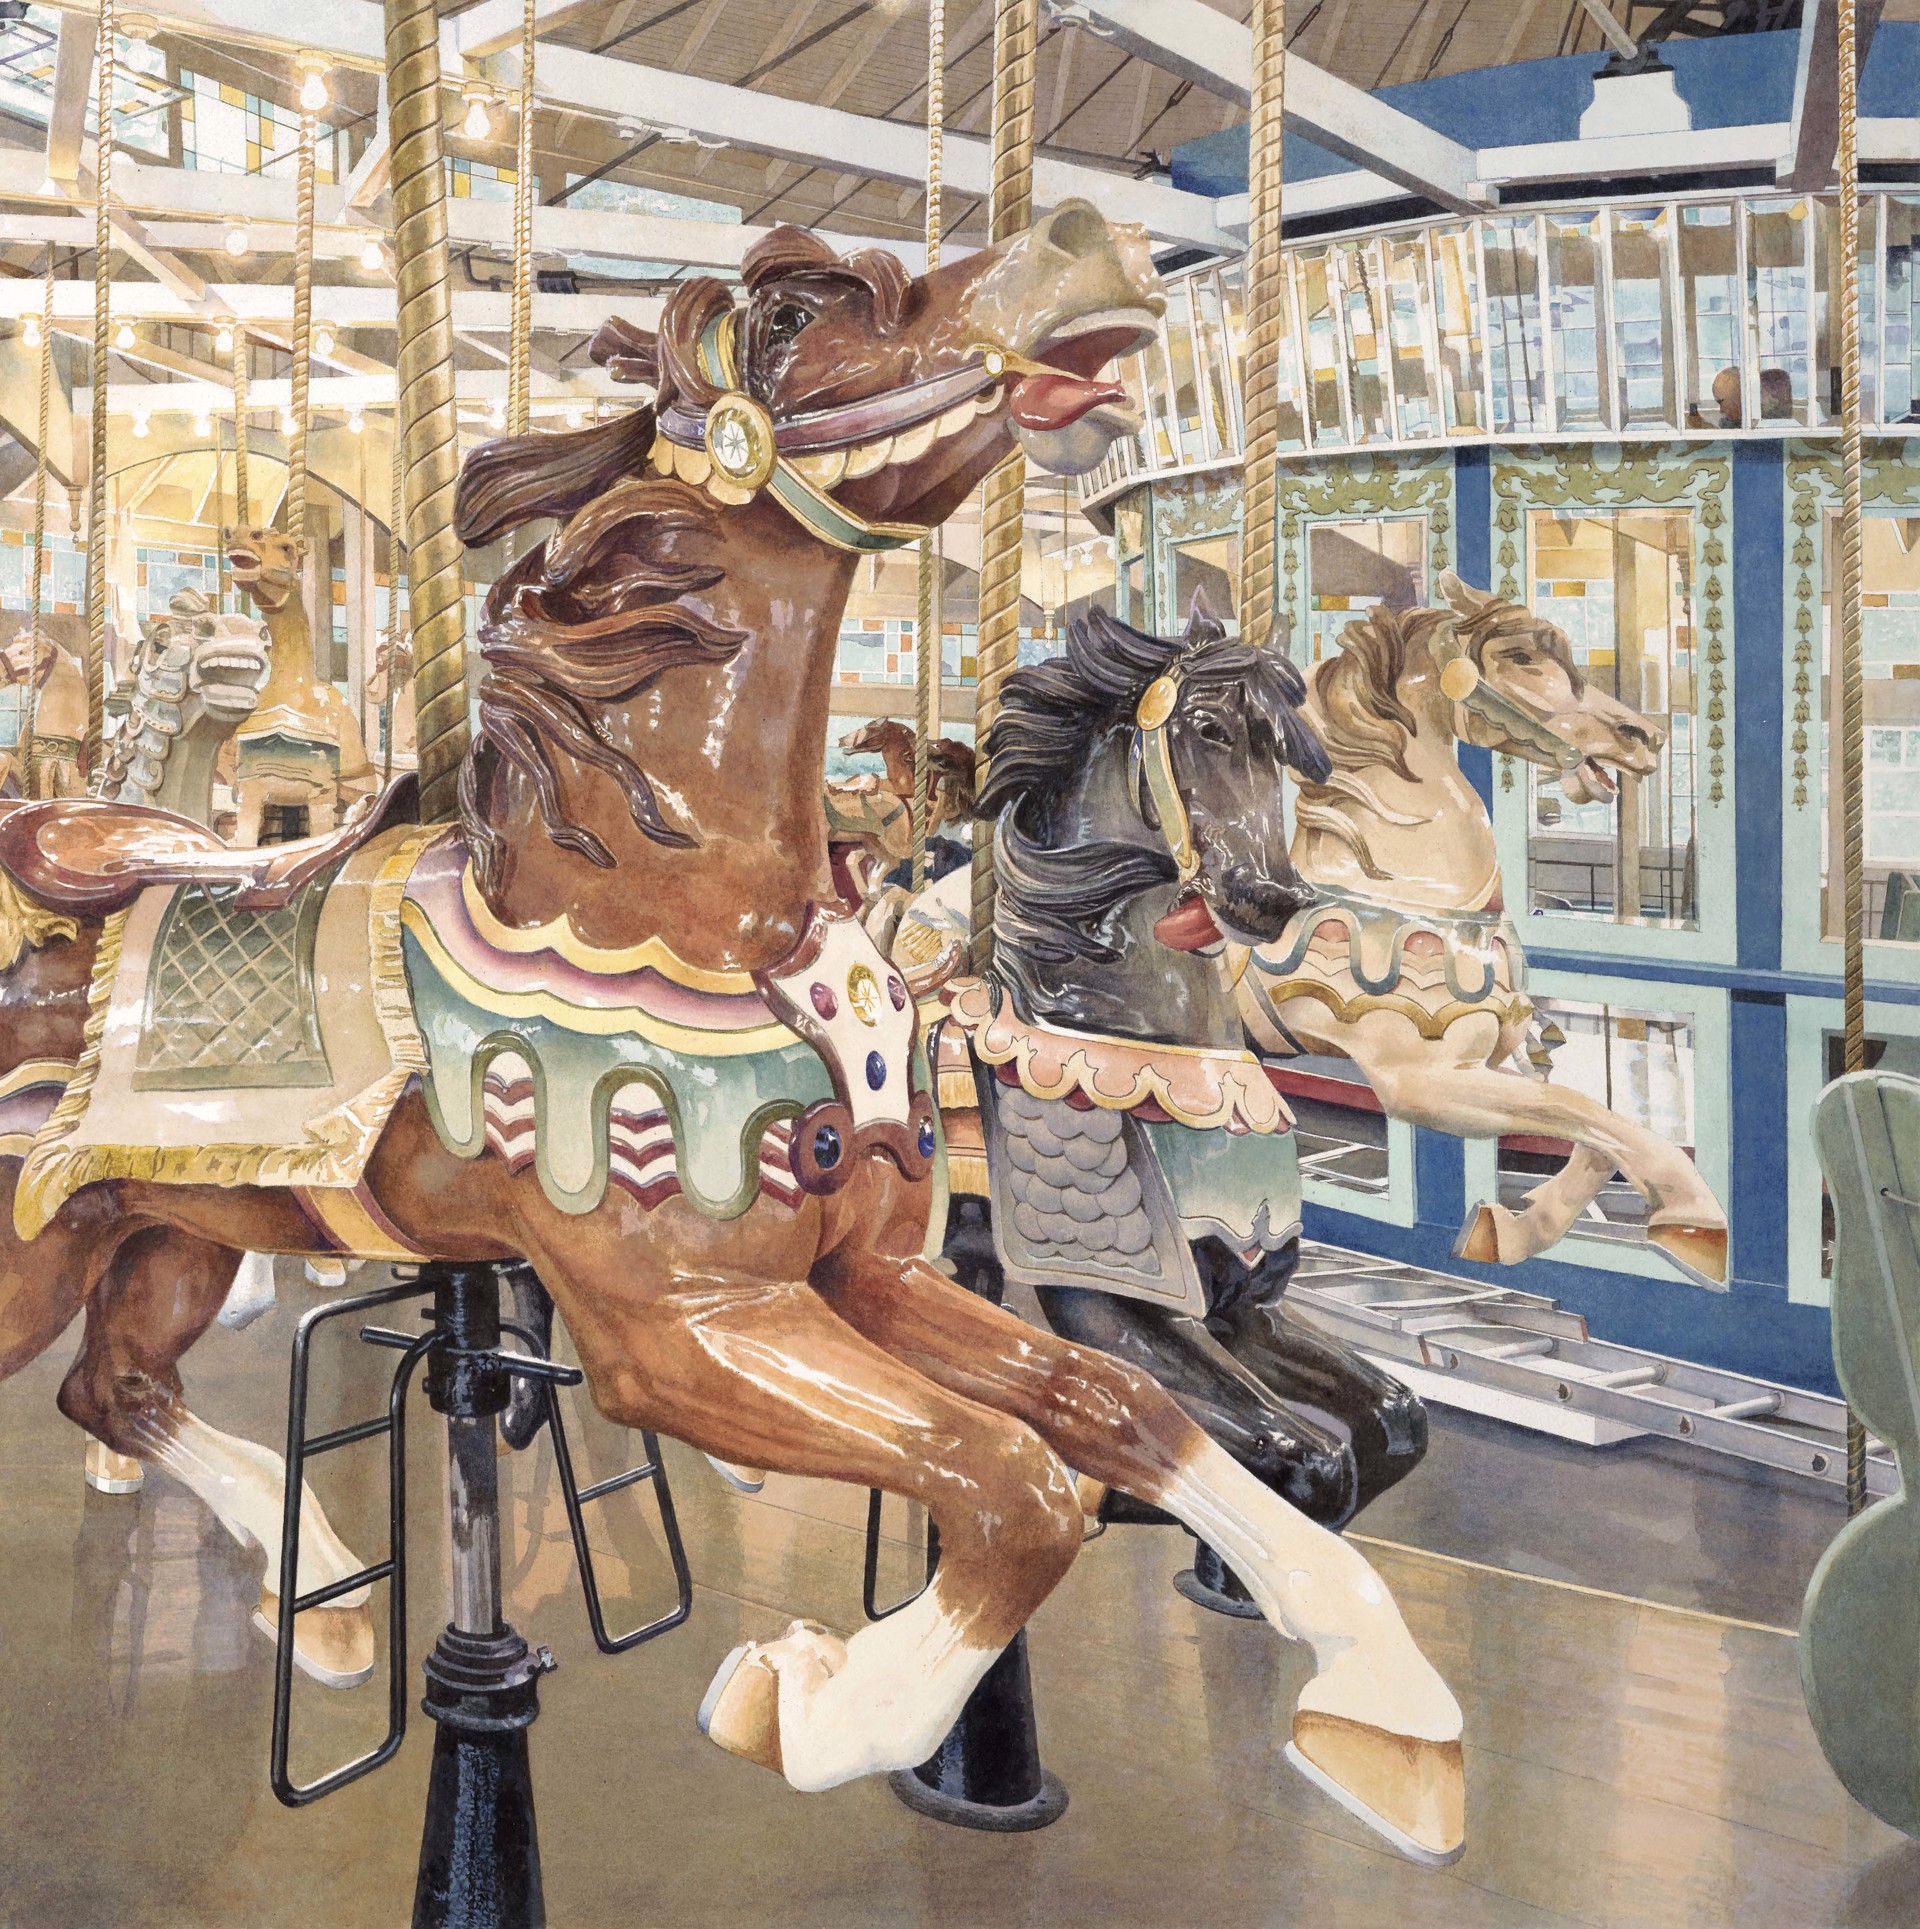 Carousel II by Stephan Hoffpauir